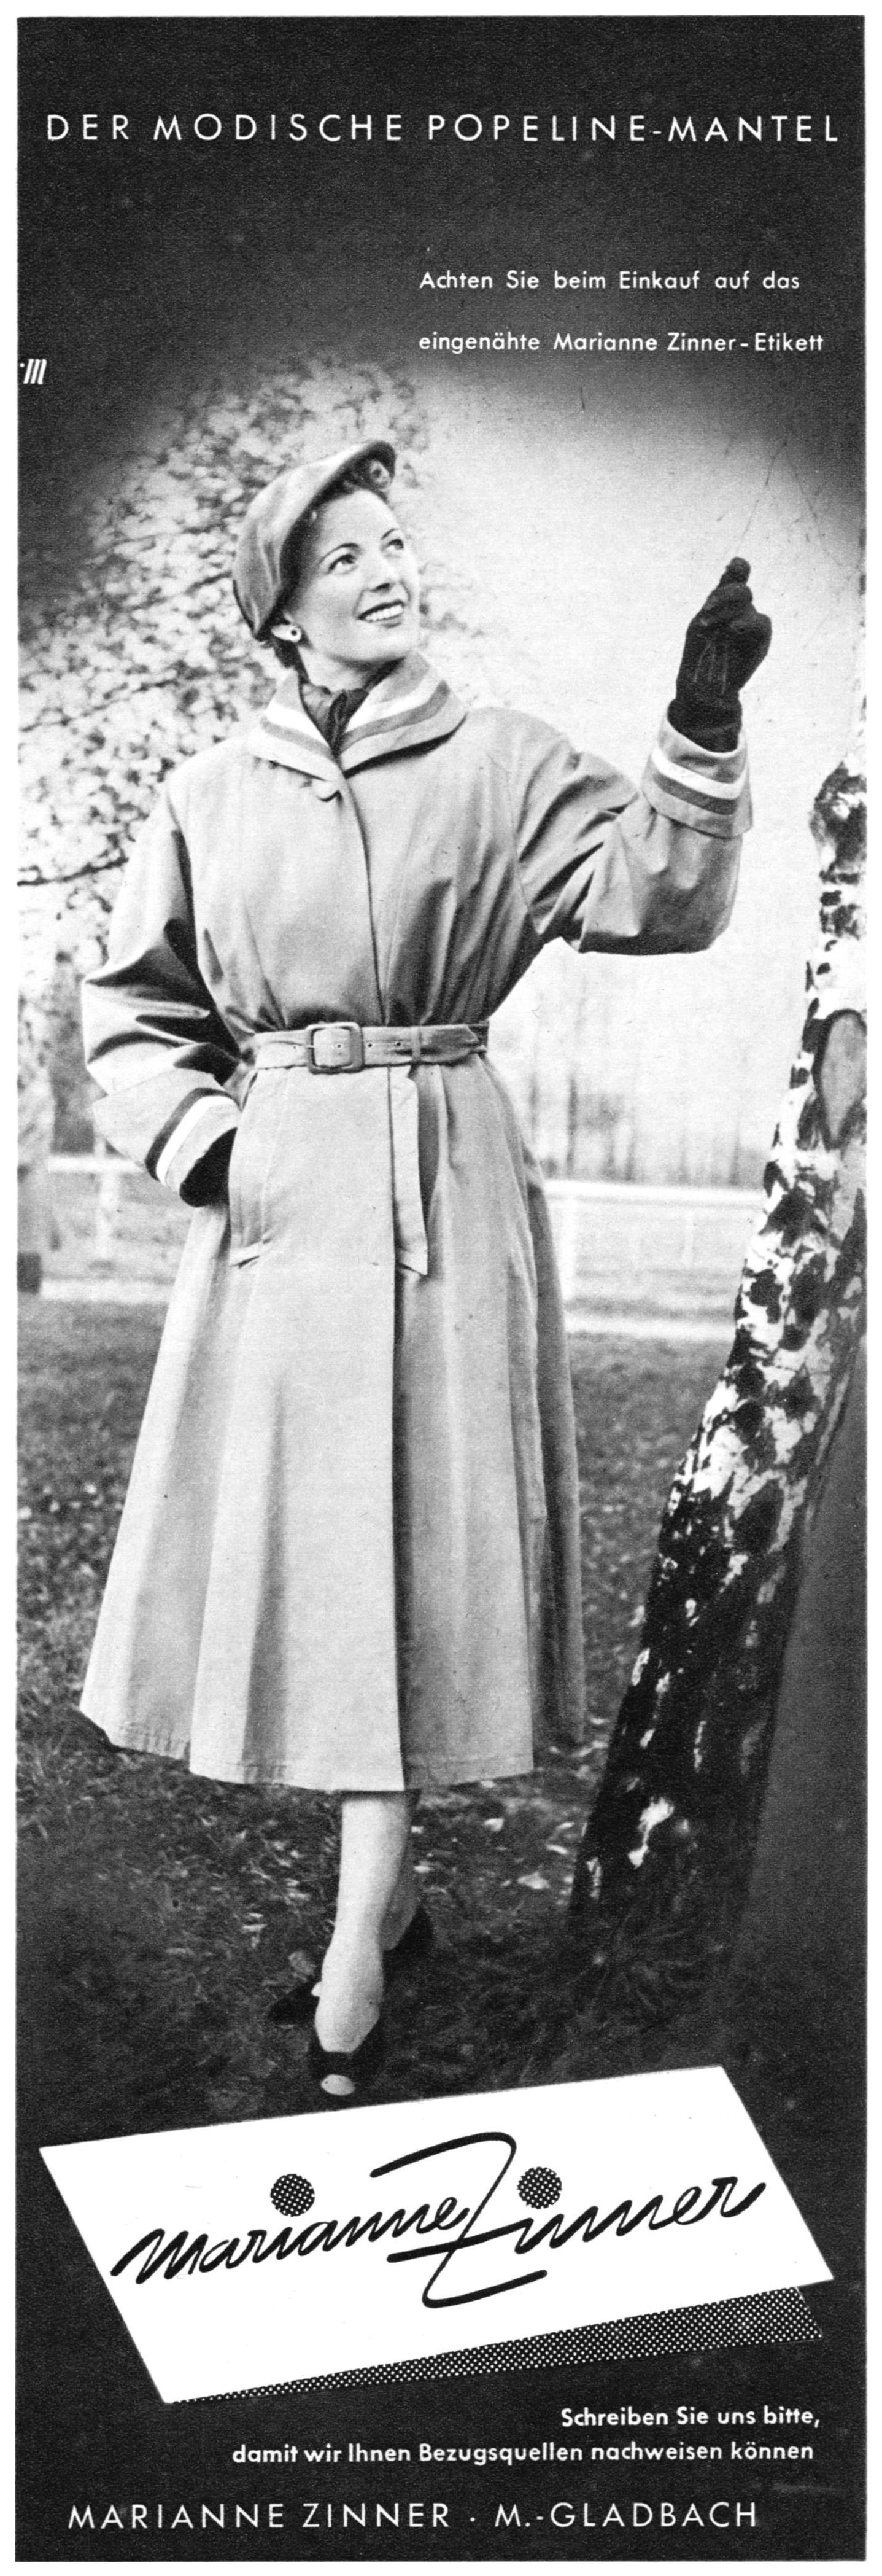 Marianne Zimmer 1953 0.jpg